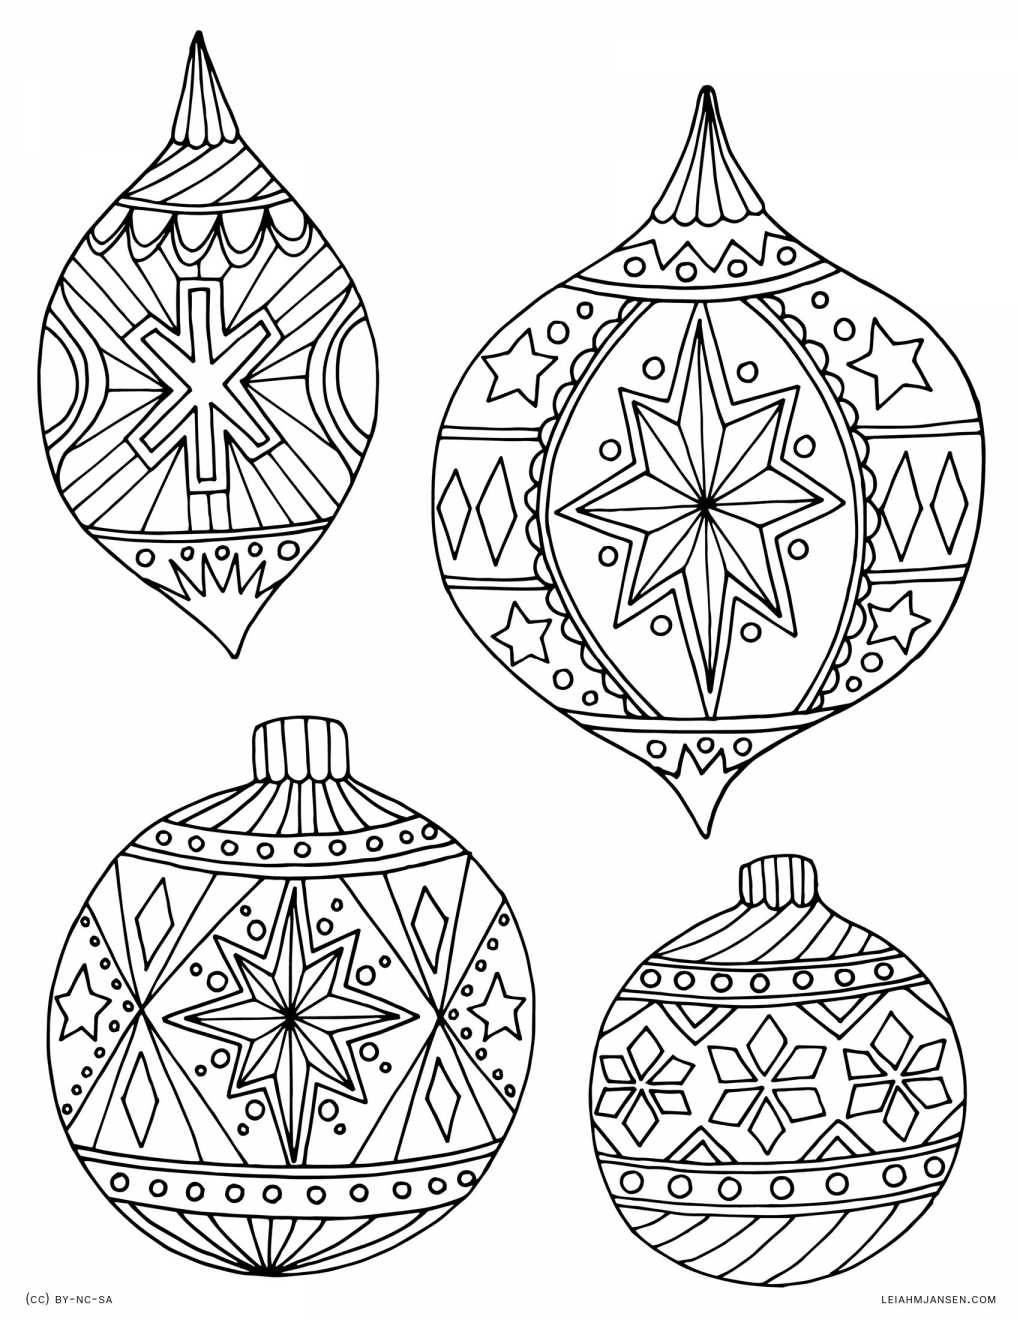 30 Cheerful Printable Christmas Ornaments | Kittybabylove - Free Printable Christmas Ornament Patterns